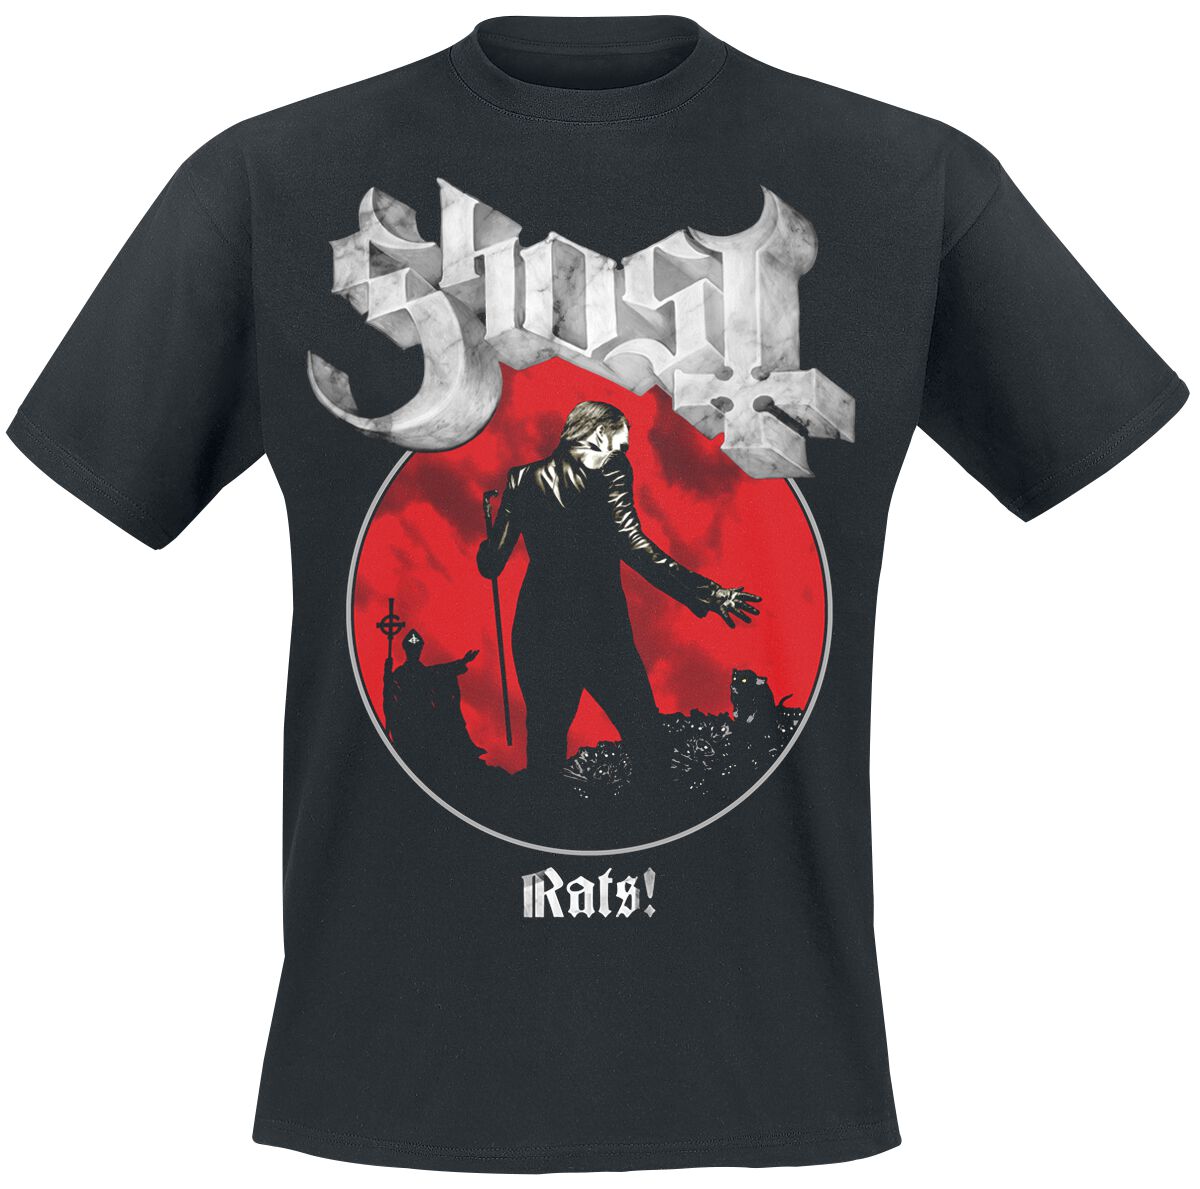 Ghost T-Shirt - Rats Admat - S bis XXL - für Männer - Größe L - schwarz  - Lizenziertes Merchandise!